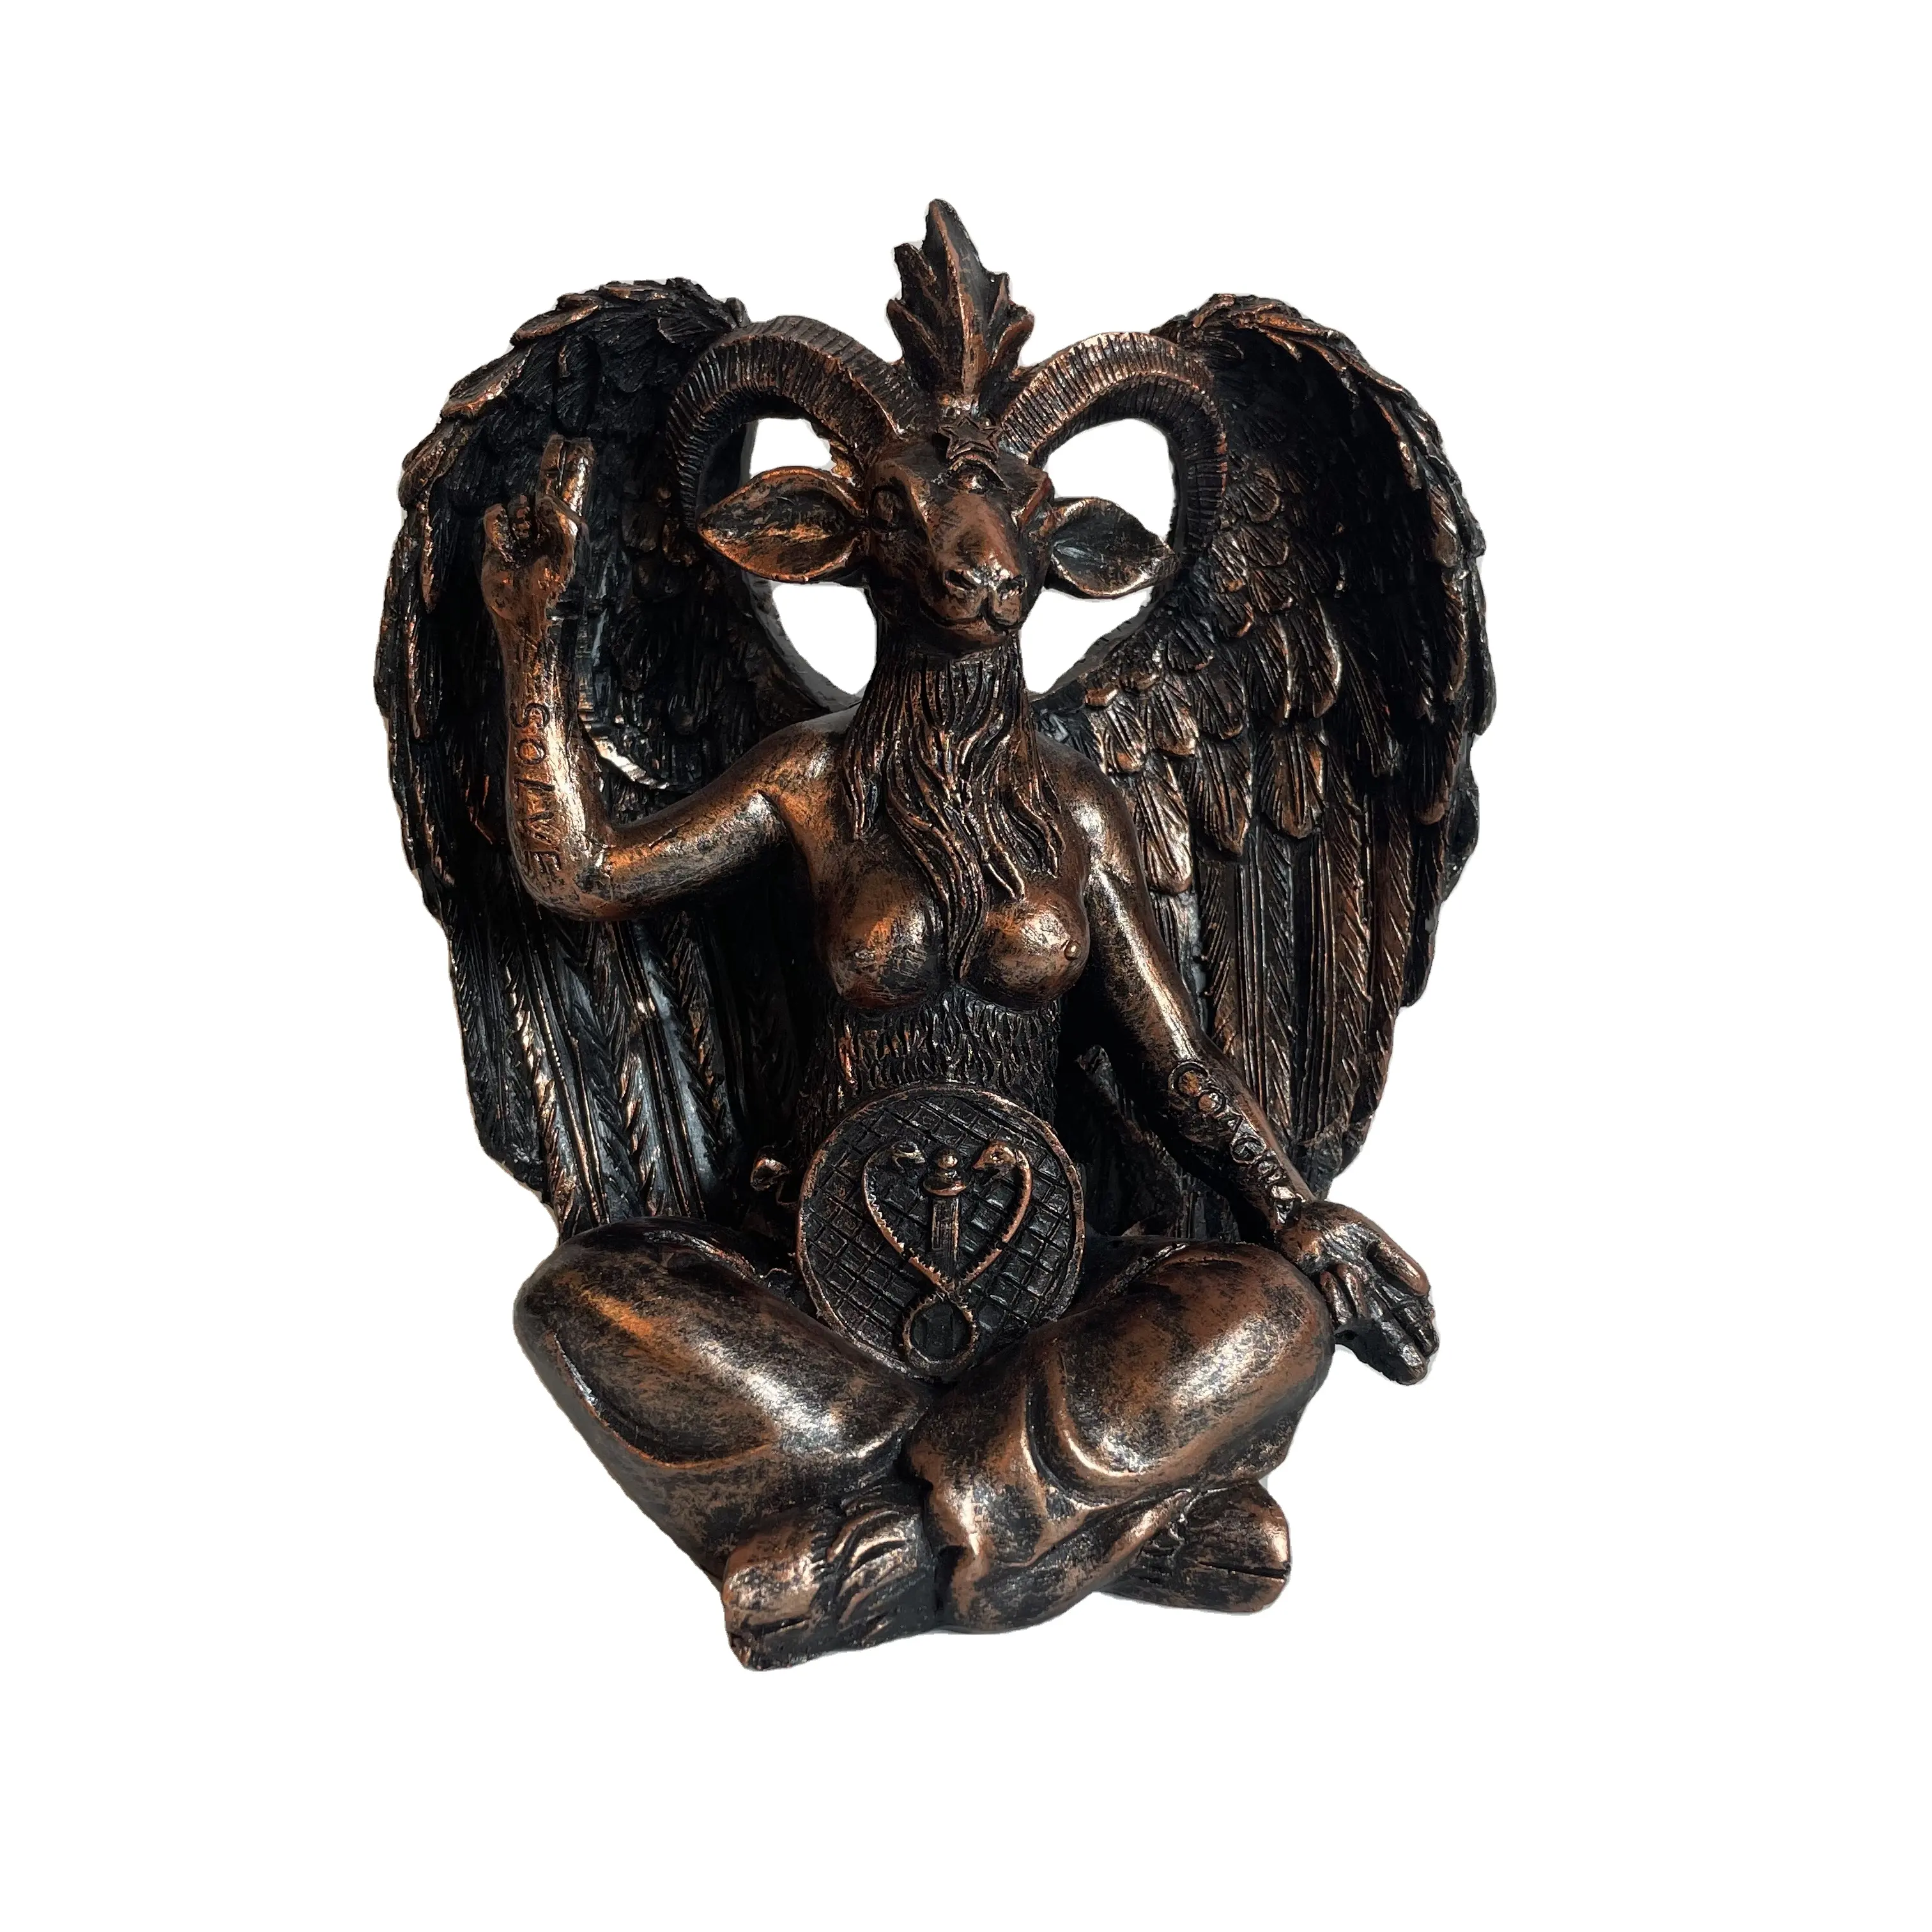 Résine Artisanat Décoration de La Maison Méditation Chèvre Satanique Diable Sculpture Table ornement En Gros résine artisanat